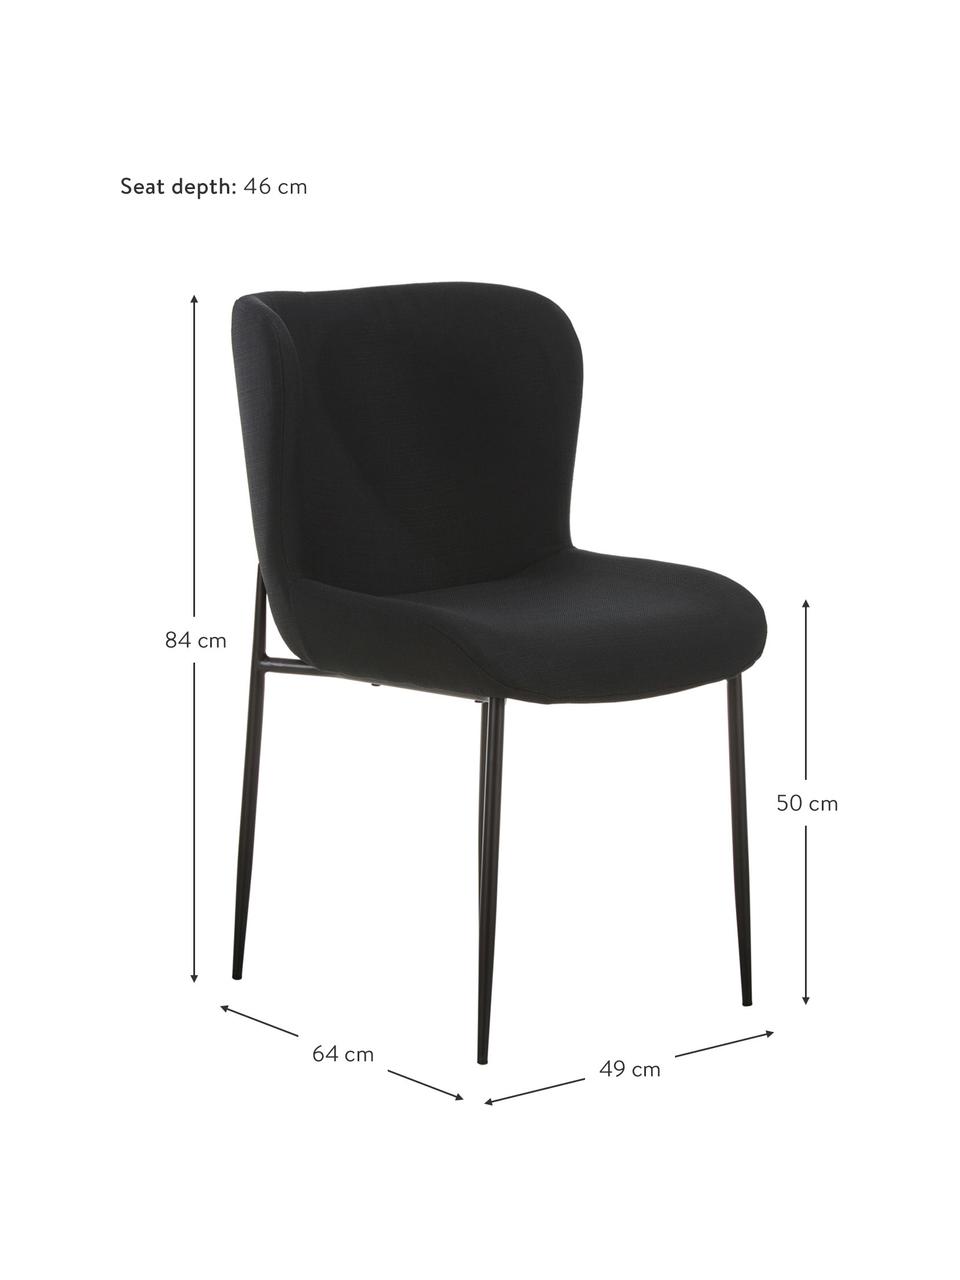 Gestoffeerde stoel Tess in zwart, Bekleding: polyester, Poten: metaal, gepoedercoat, Geweven stof zwart, poten zwart, B 49 x D 64 cm